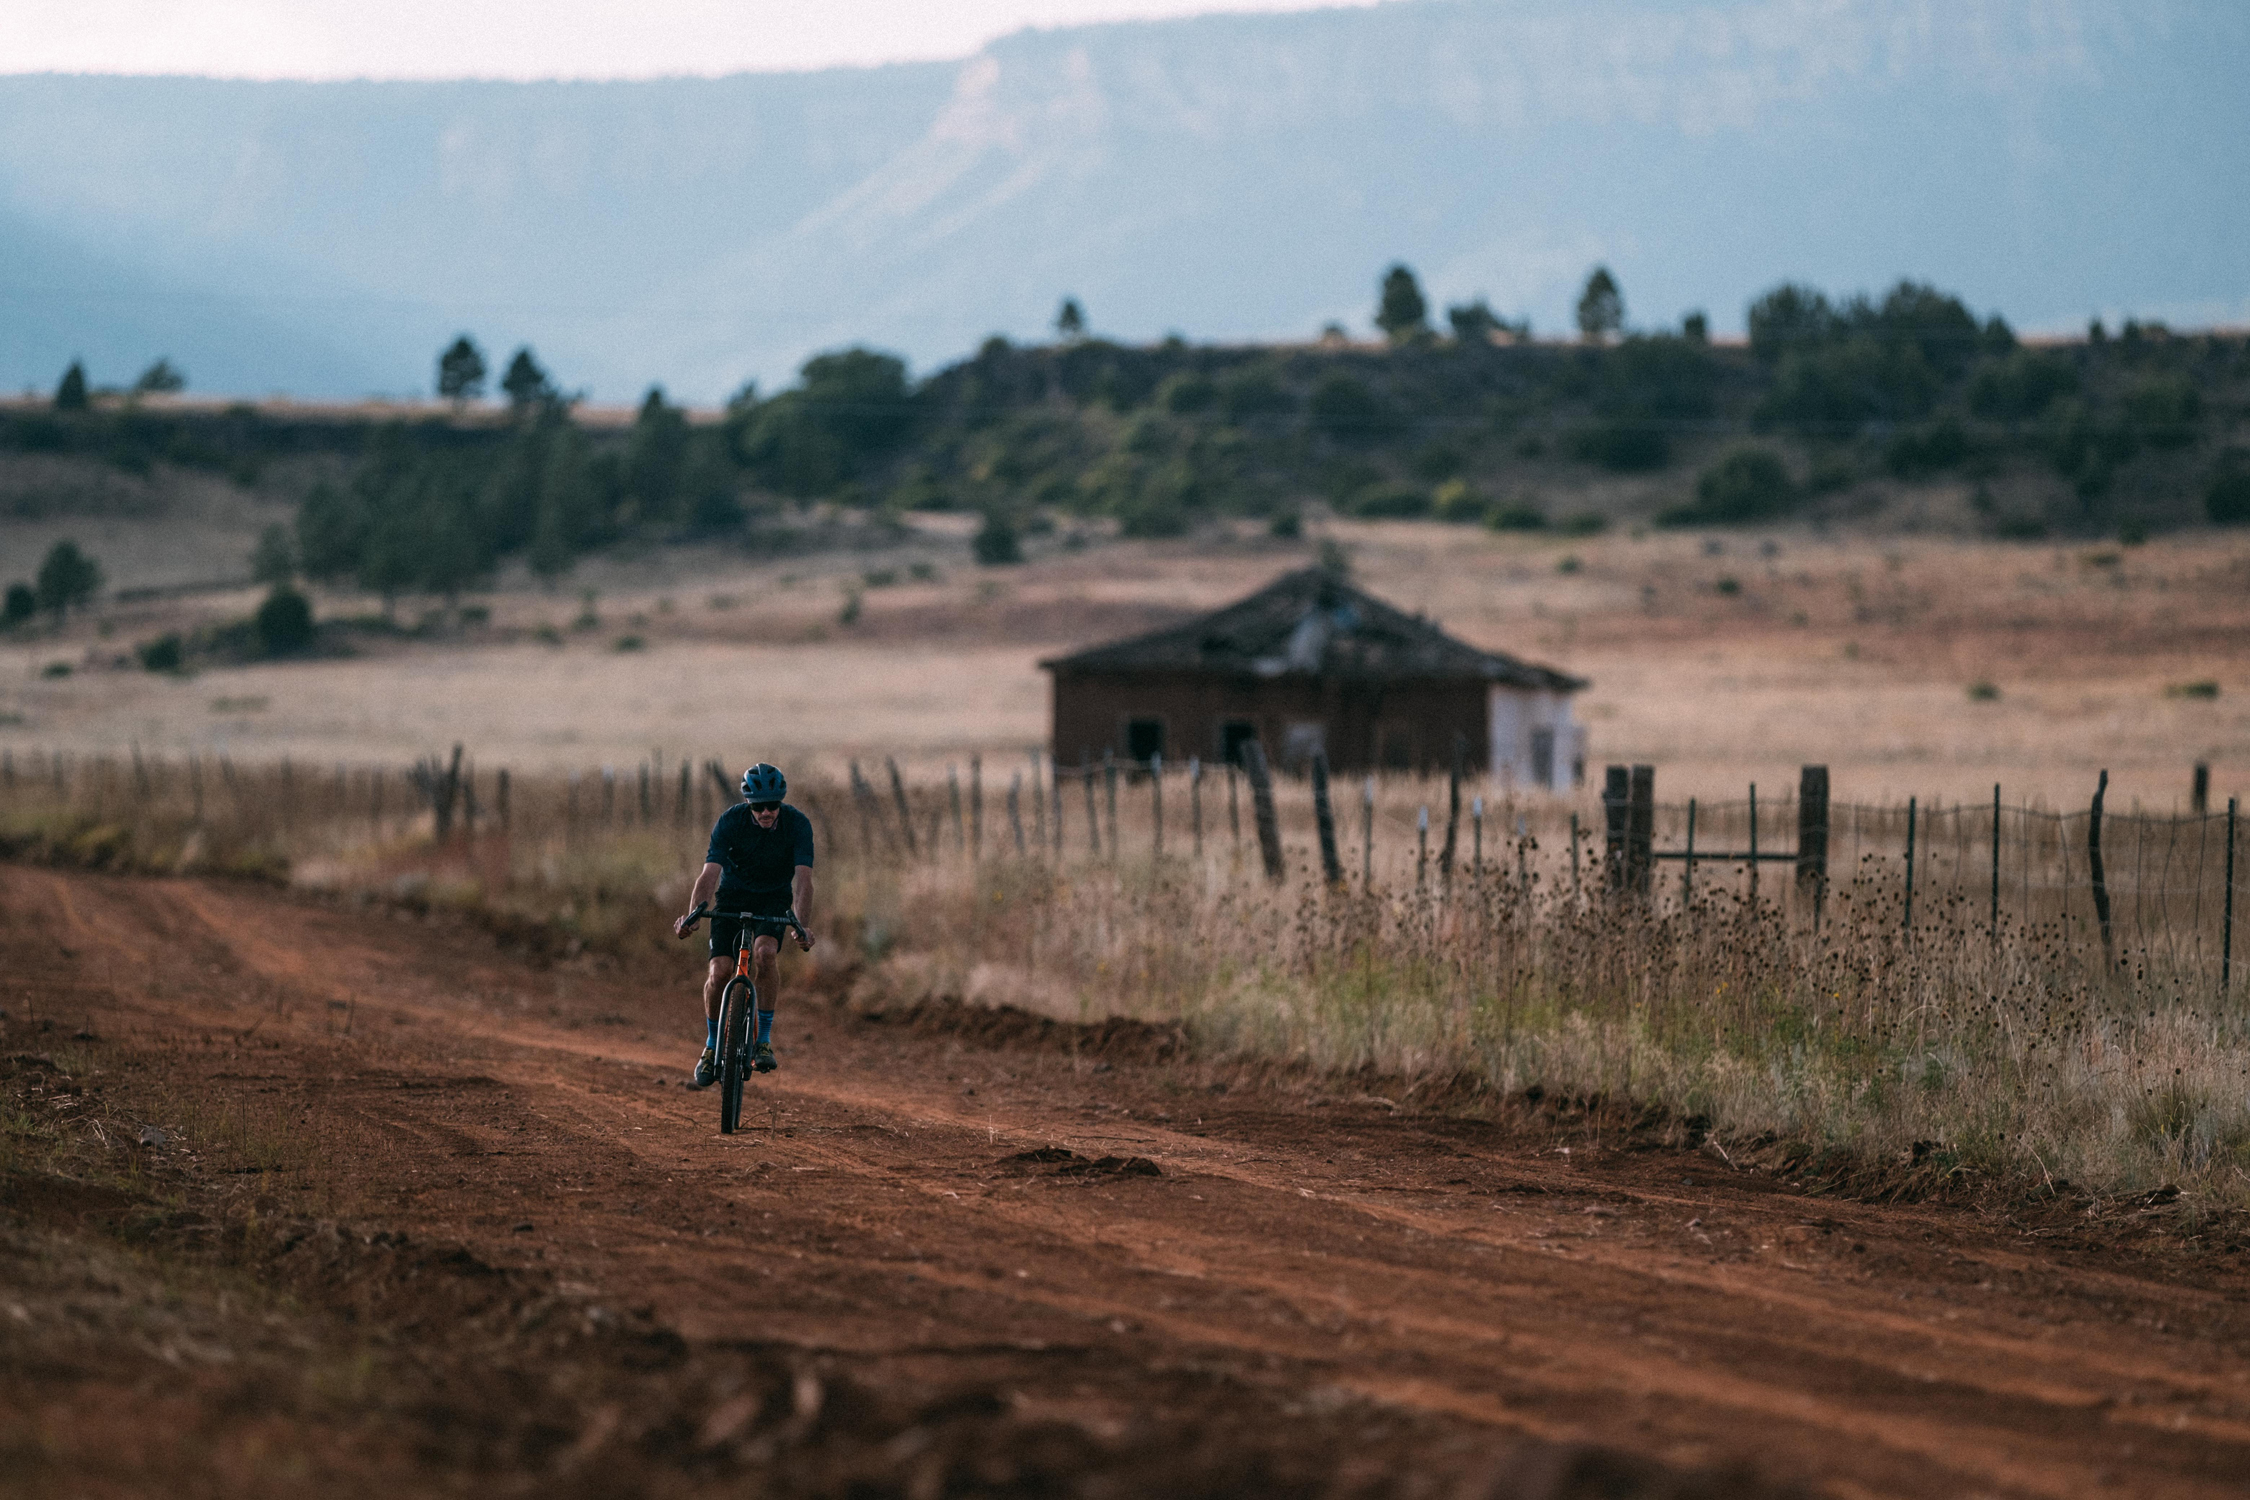 Alex Morgan montando su bicicleta de gravel en una carretera de tierra en Nuevo México